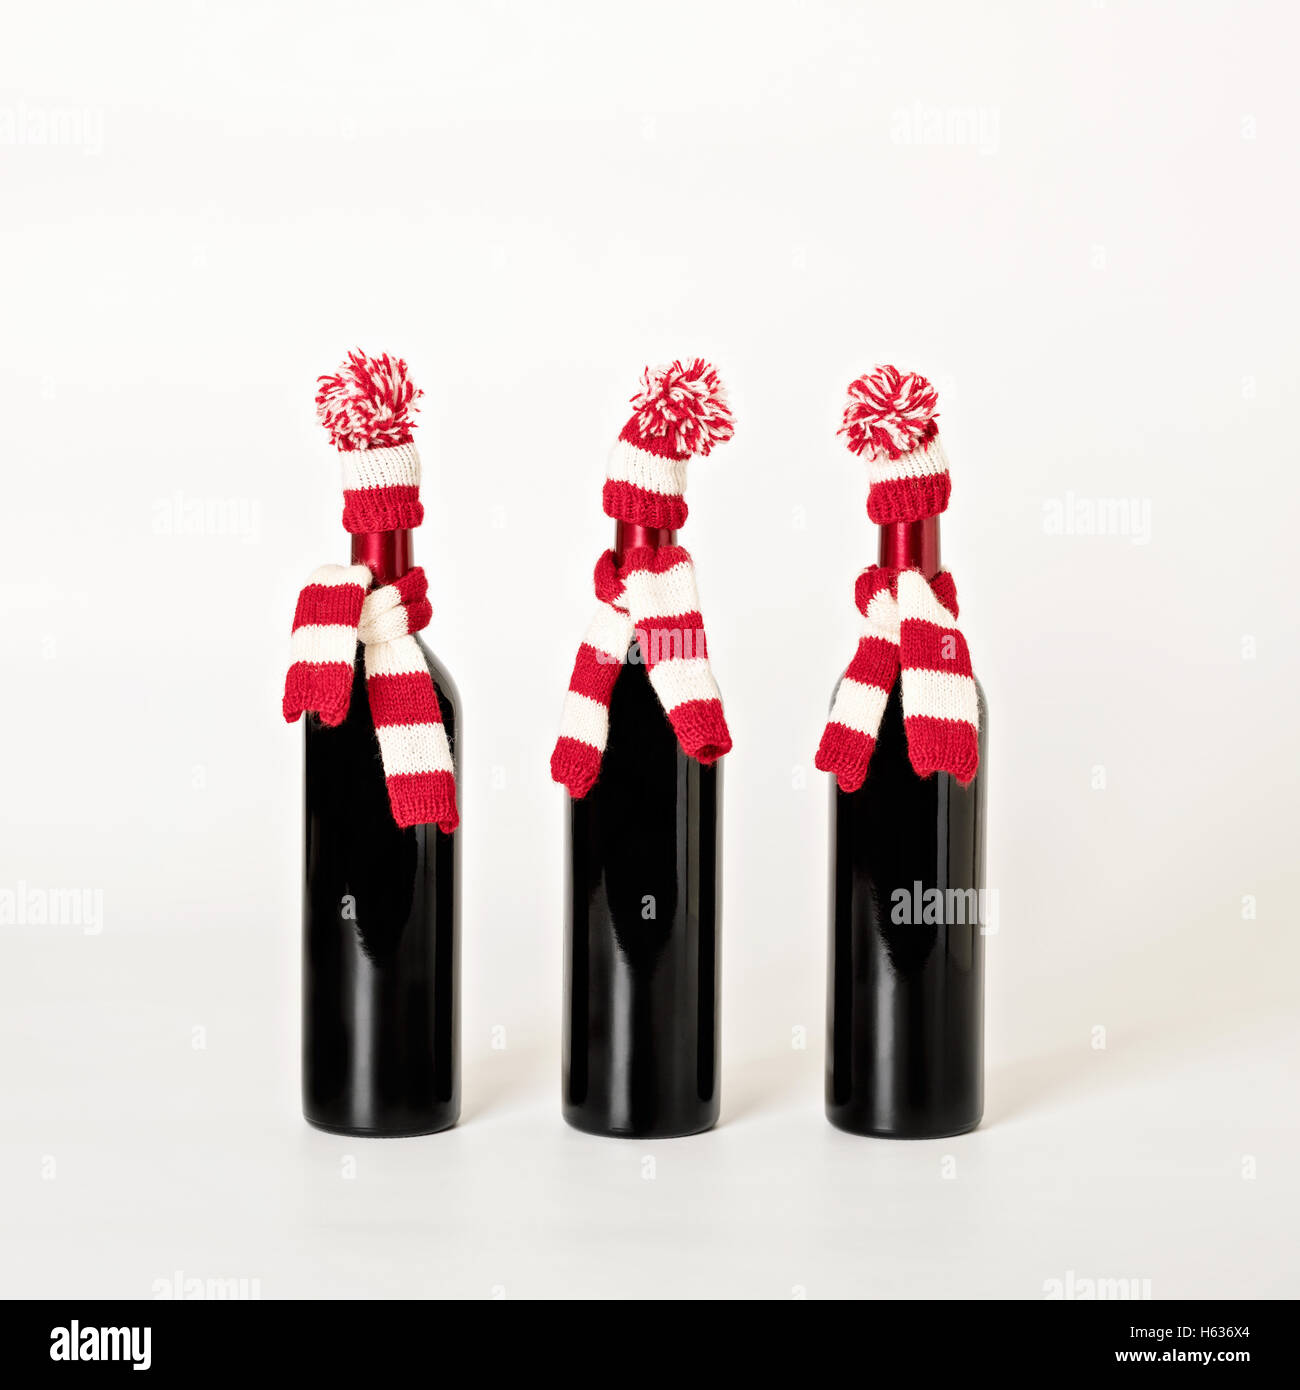 Frohe Weihnachten und glückliches neues Jahr. Drei Flaschen Wein in gestrickte Mützen und Schals in roten und weißen Streifen auf einem weißen Hinterg Stockfoto